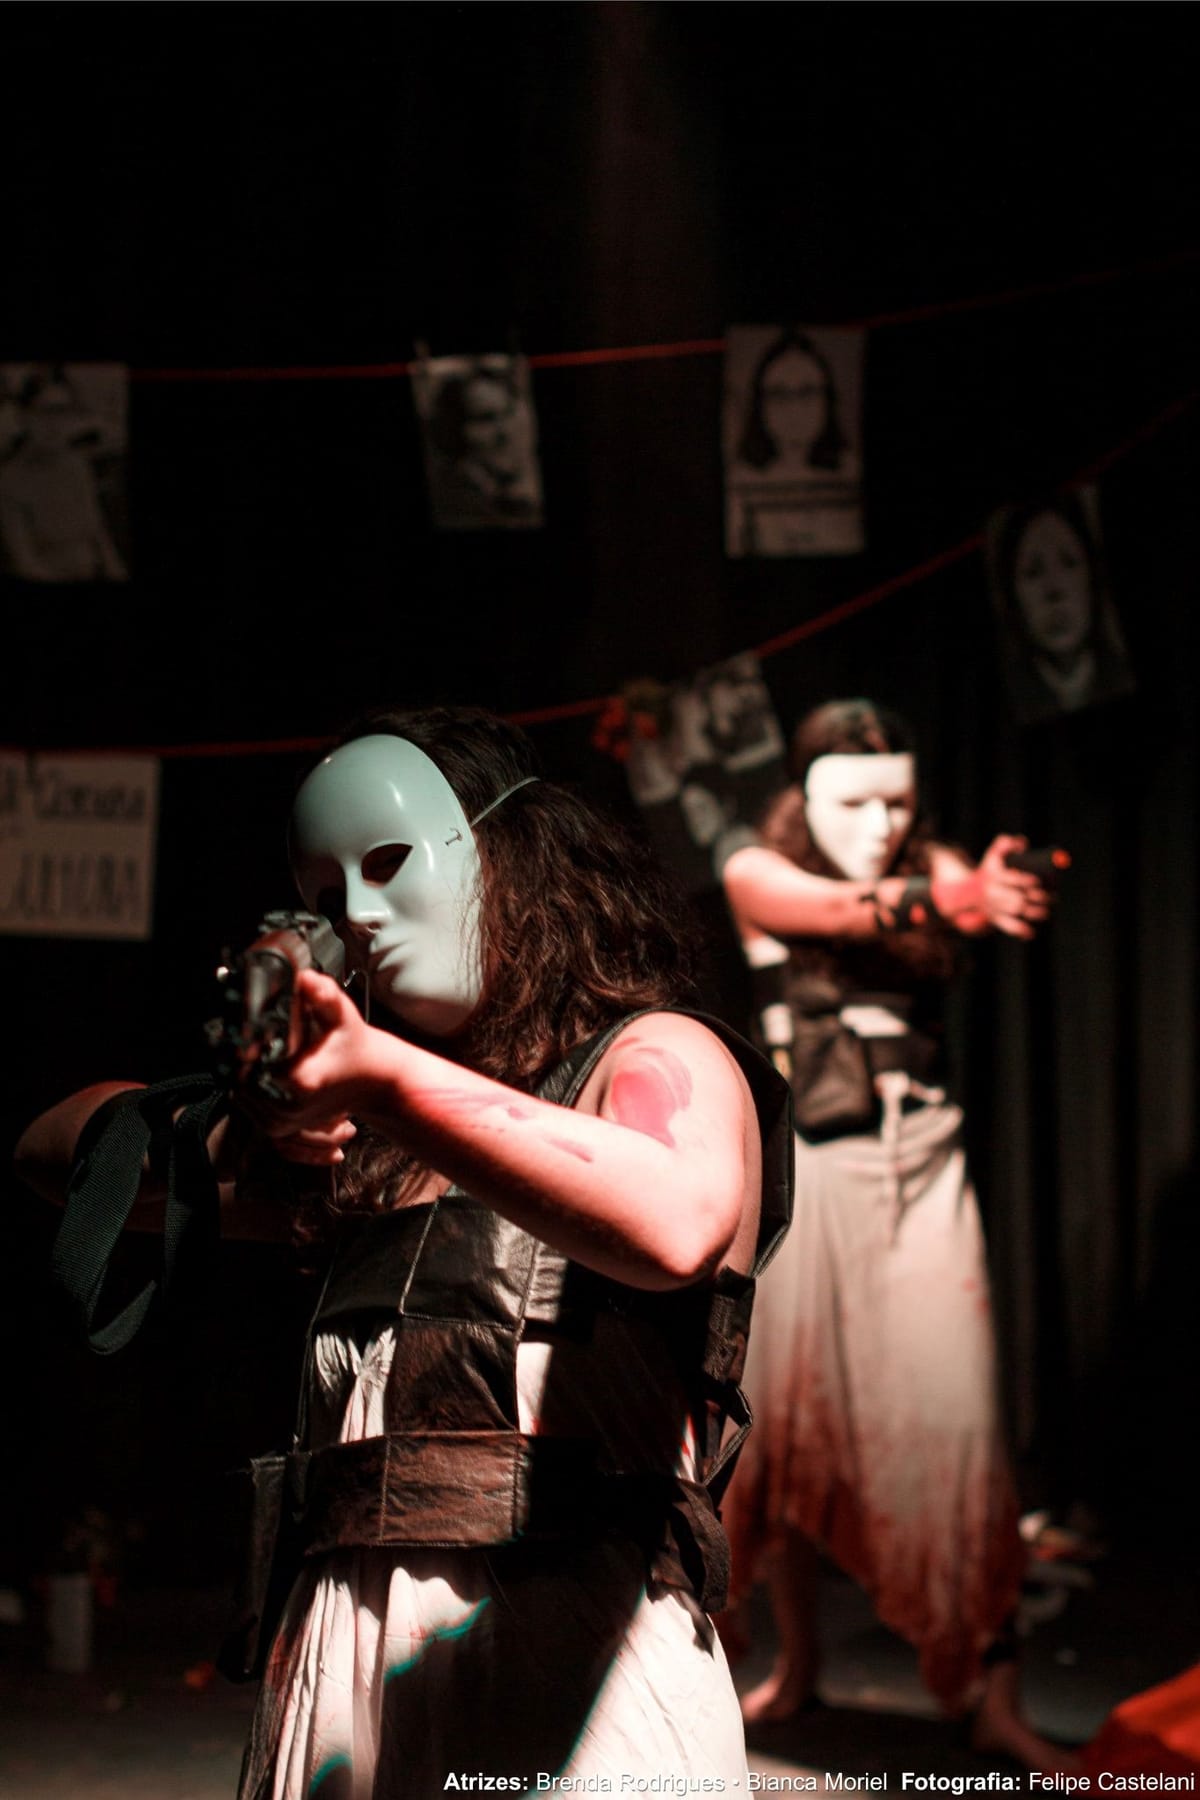 Teatro popular: Companhia Andarilhas traz a peça "Inimigas Púlbicas", retratando mulheres revolucionárias na ditadura militar